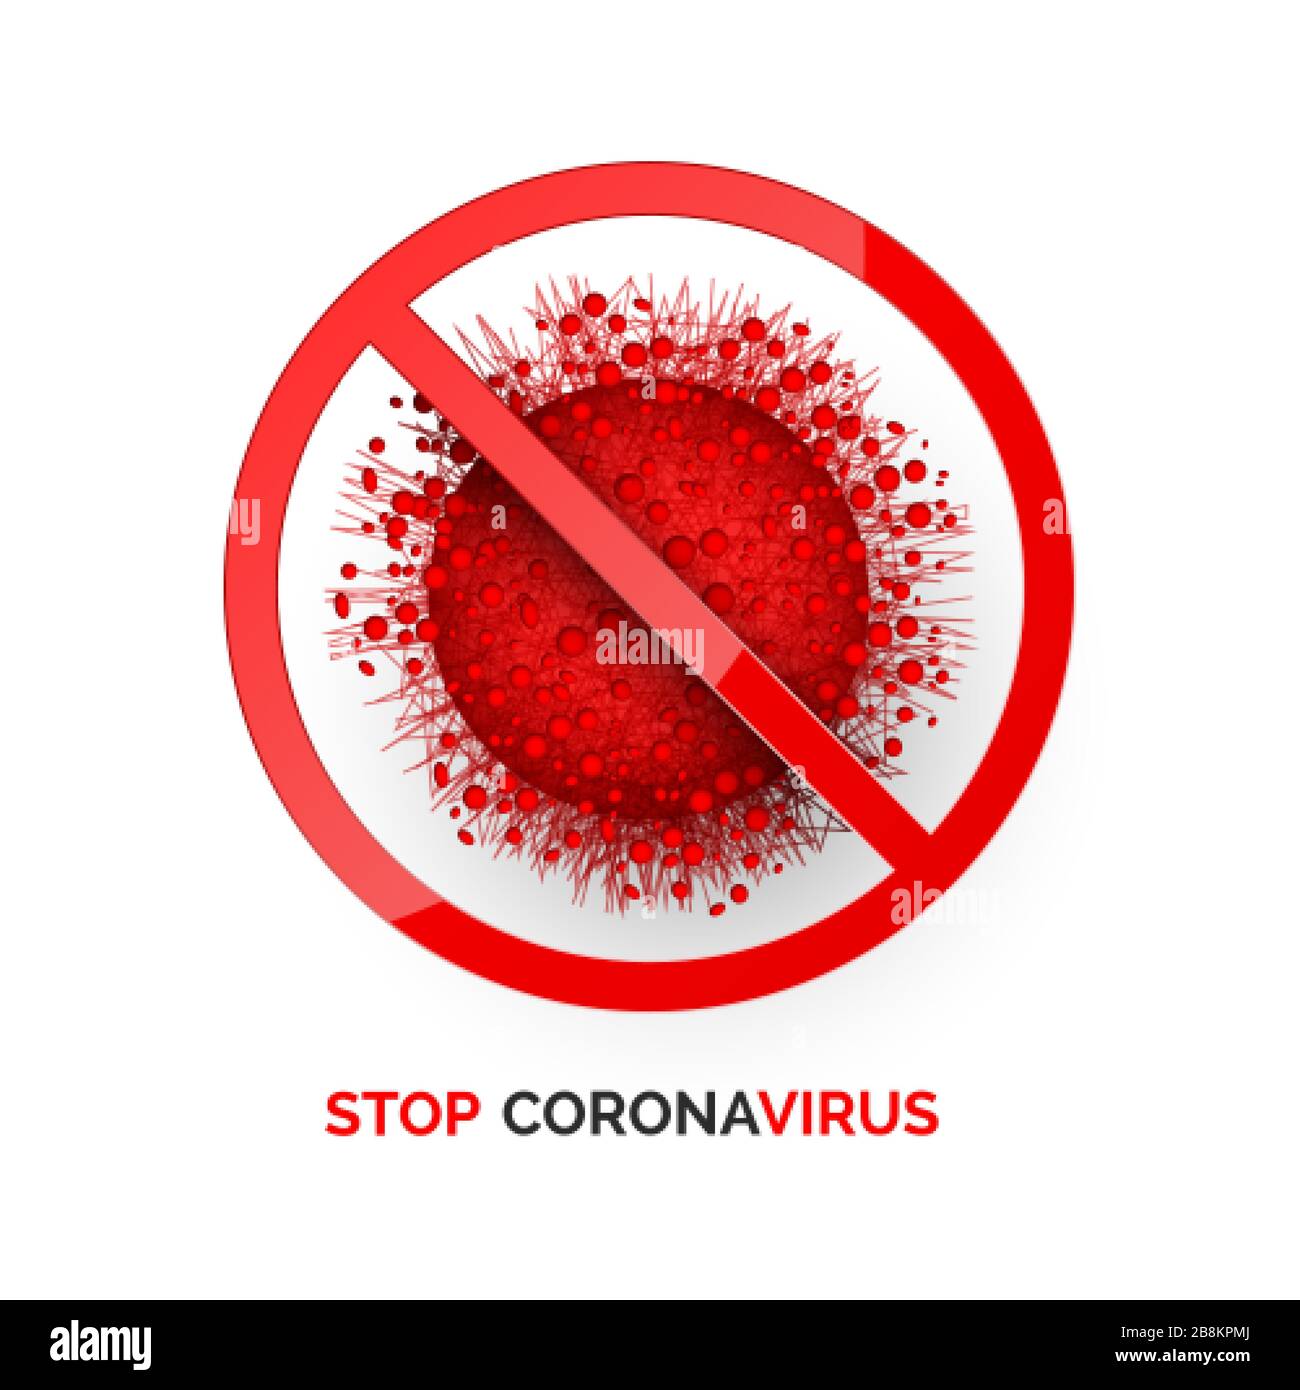 Stoppen Sie Die Infektion Mit Dem Corona-Virus. Hintergrund der medizinischen Warnung. Gefährliche Krankheitssymptome. Vektorgrafiken Stock Vektor